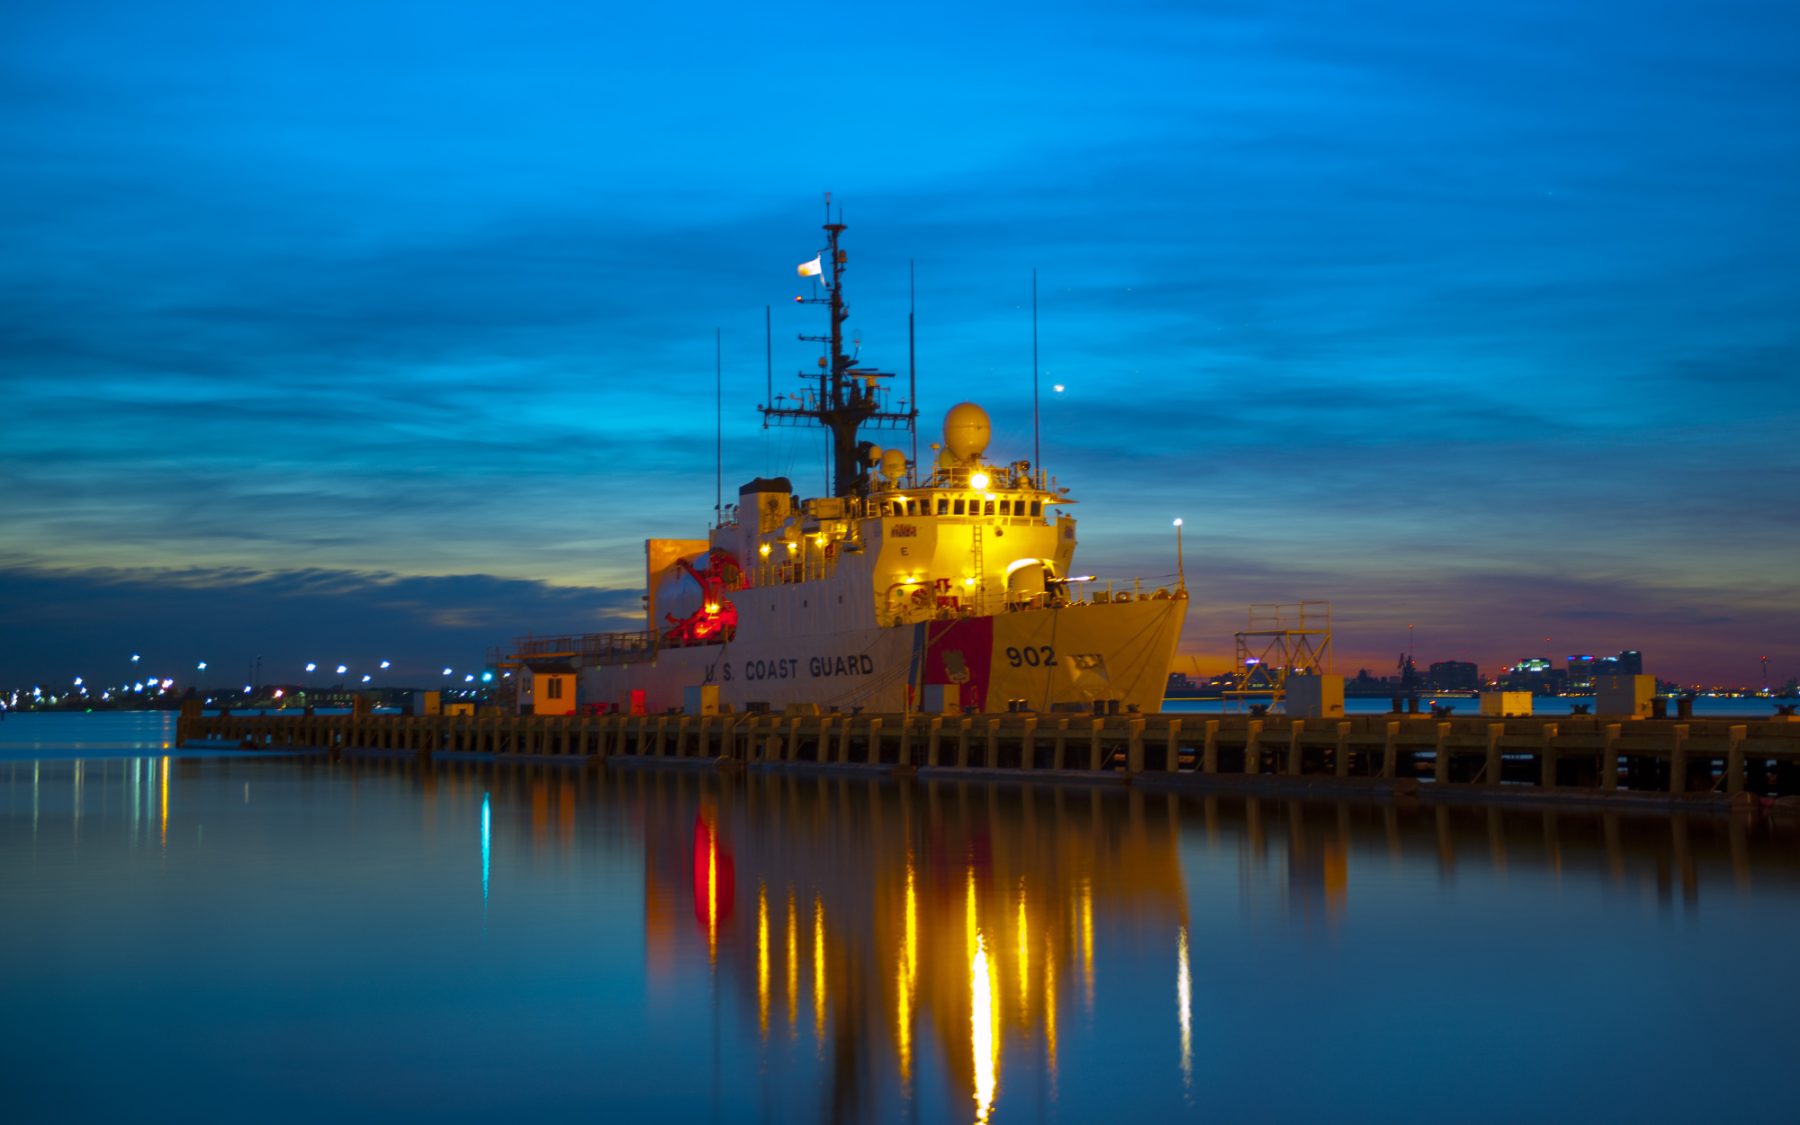 US Coast Guard Ship docked at Base Portsmouth sunrise